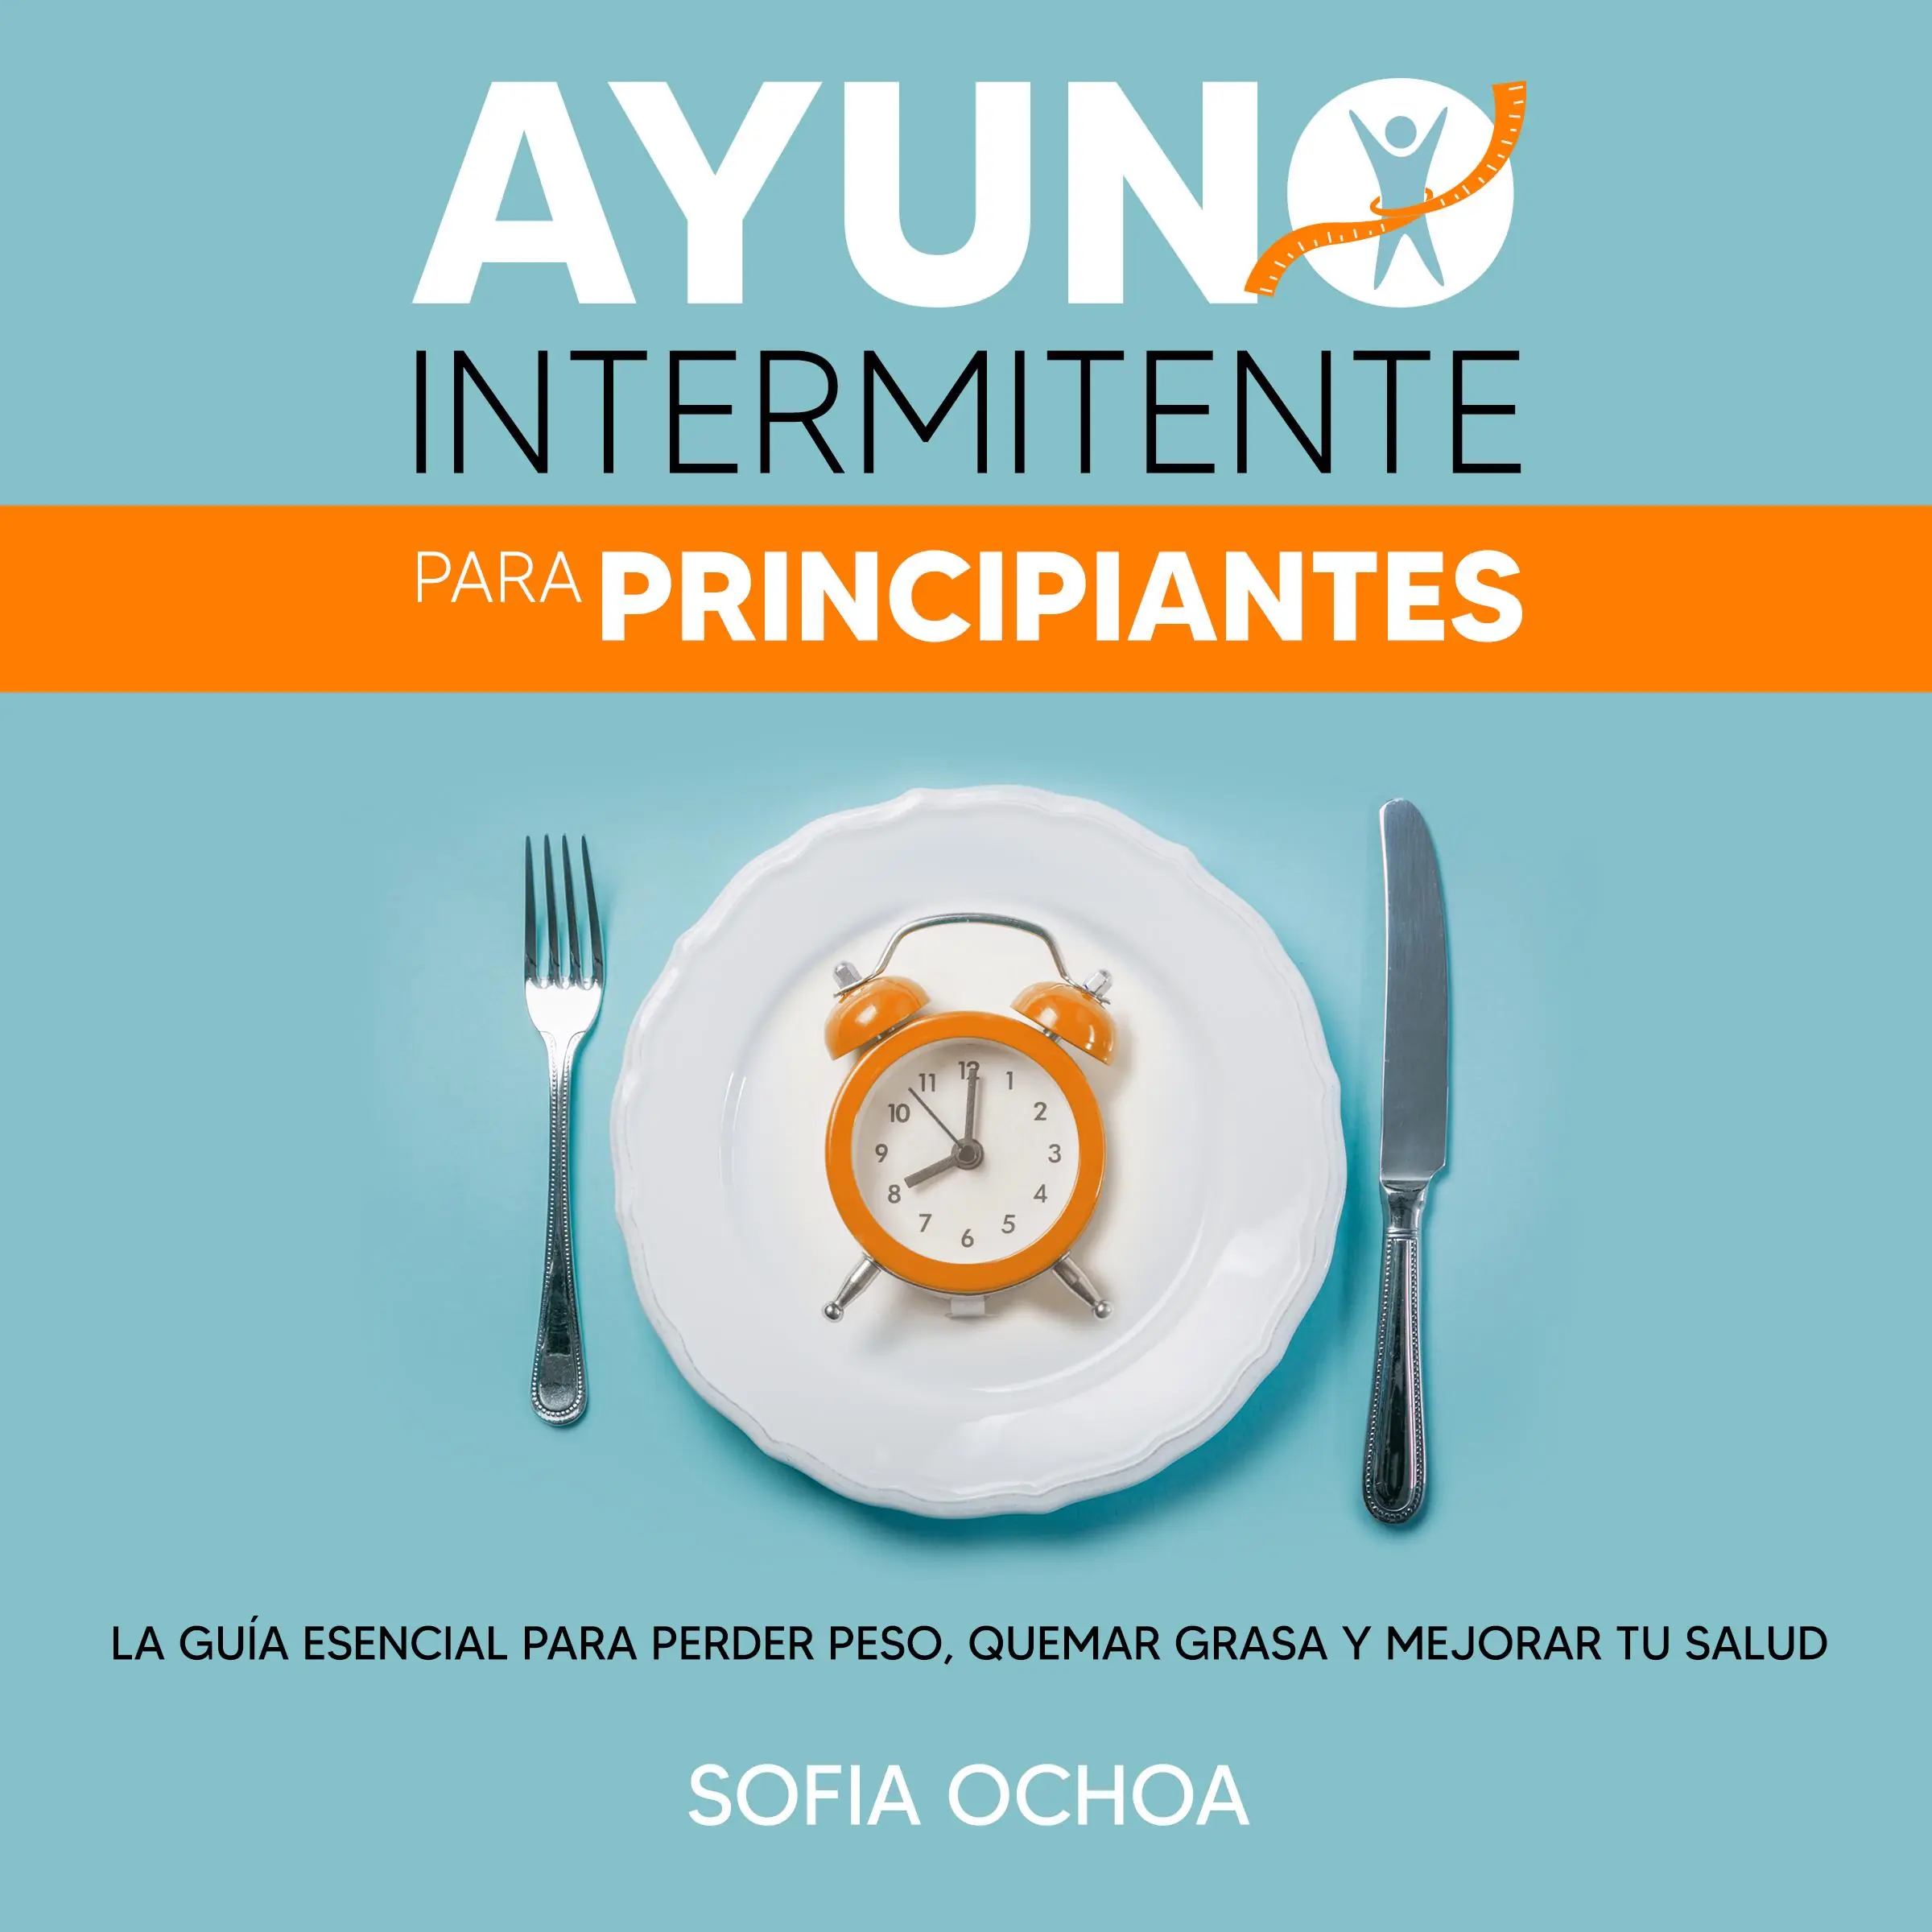 Ayuno intermitente para principiantes: La guia esencial para perder peso, quemar grasa y mejorar tu salud Audiobook by Sofia Ochoa